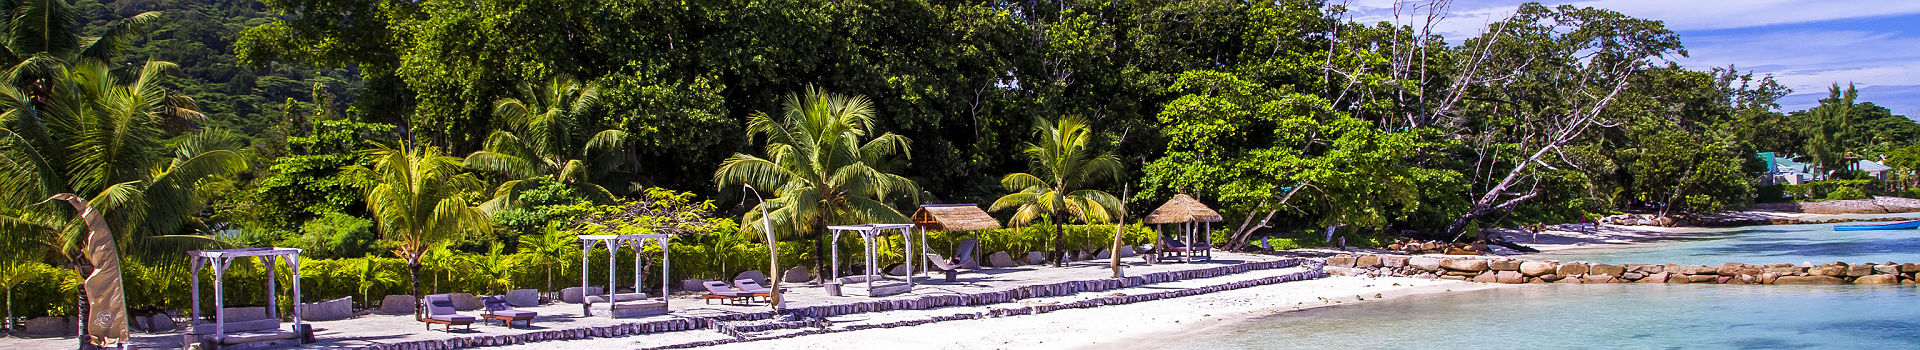 Domaine de l'Orangeraie - Espace privatisé sur la plage avec des chaises longues